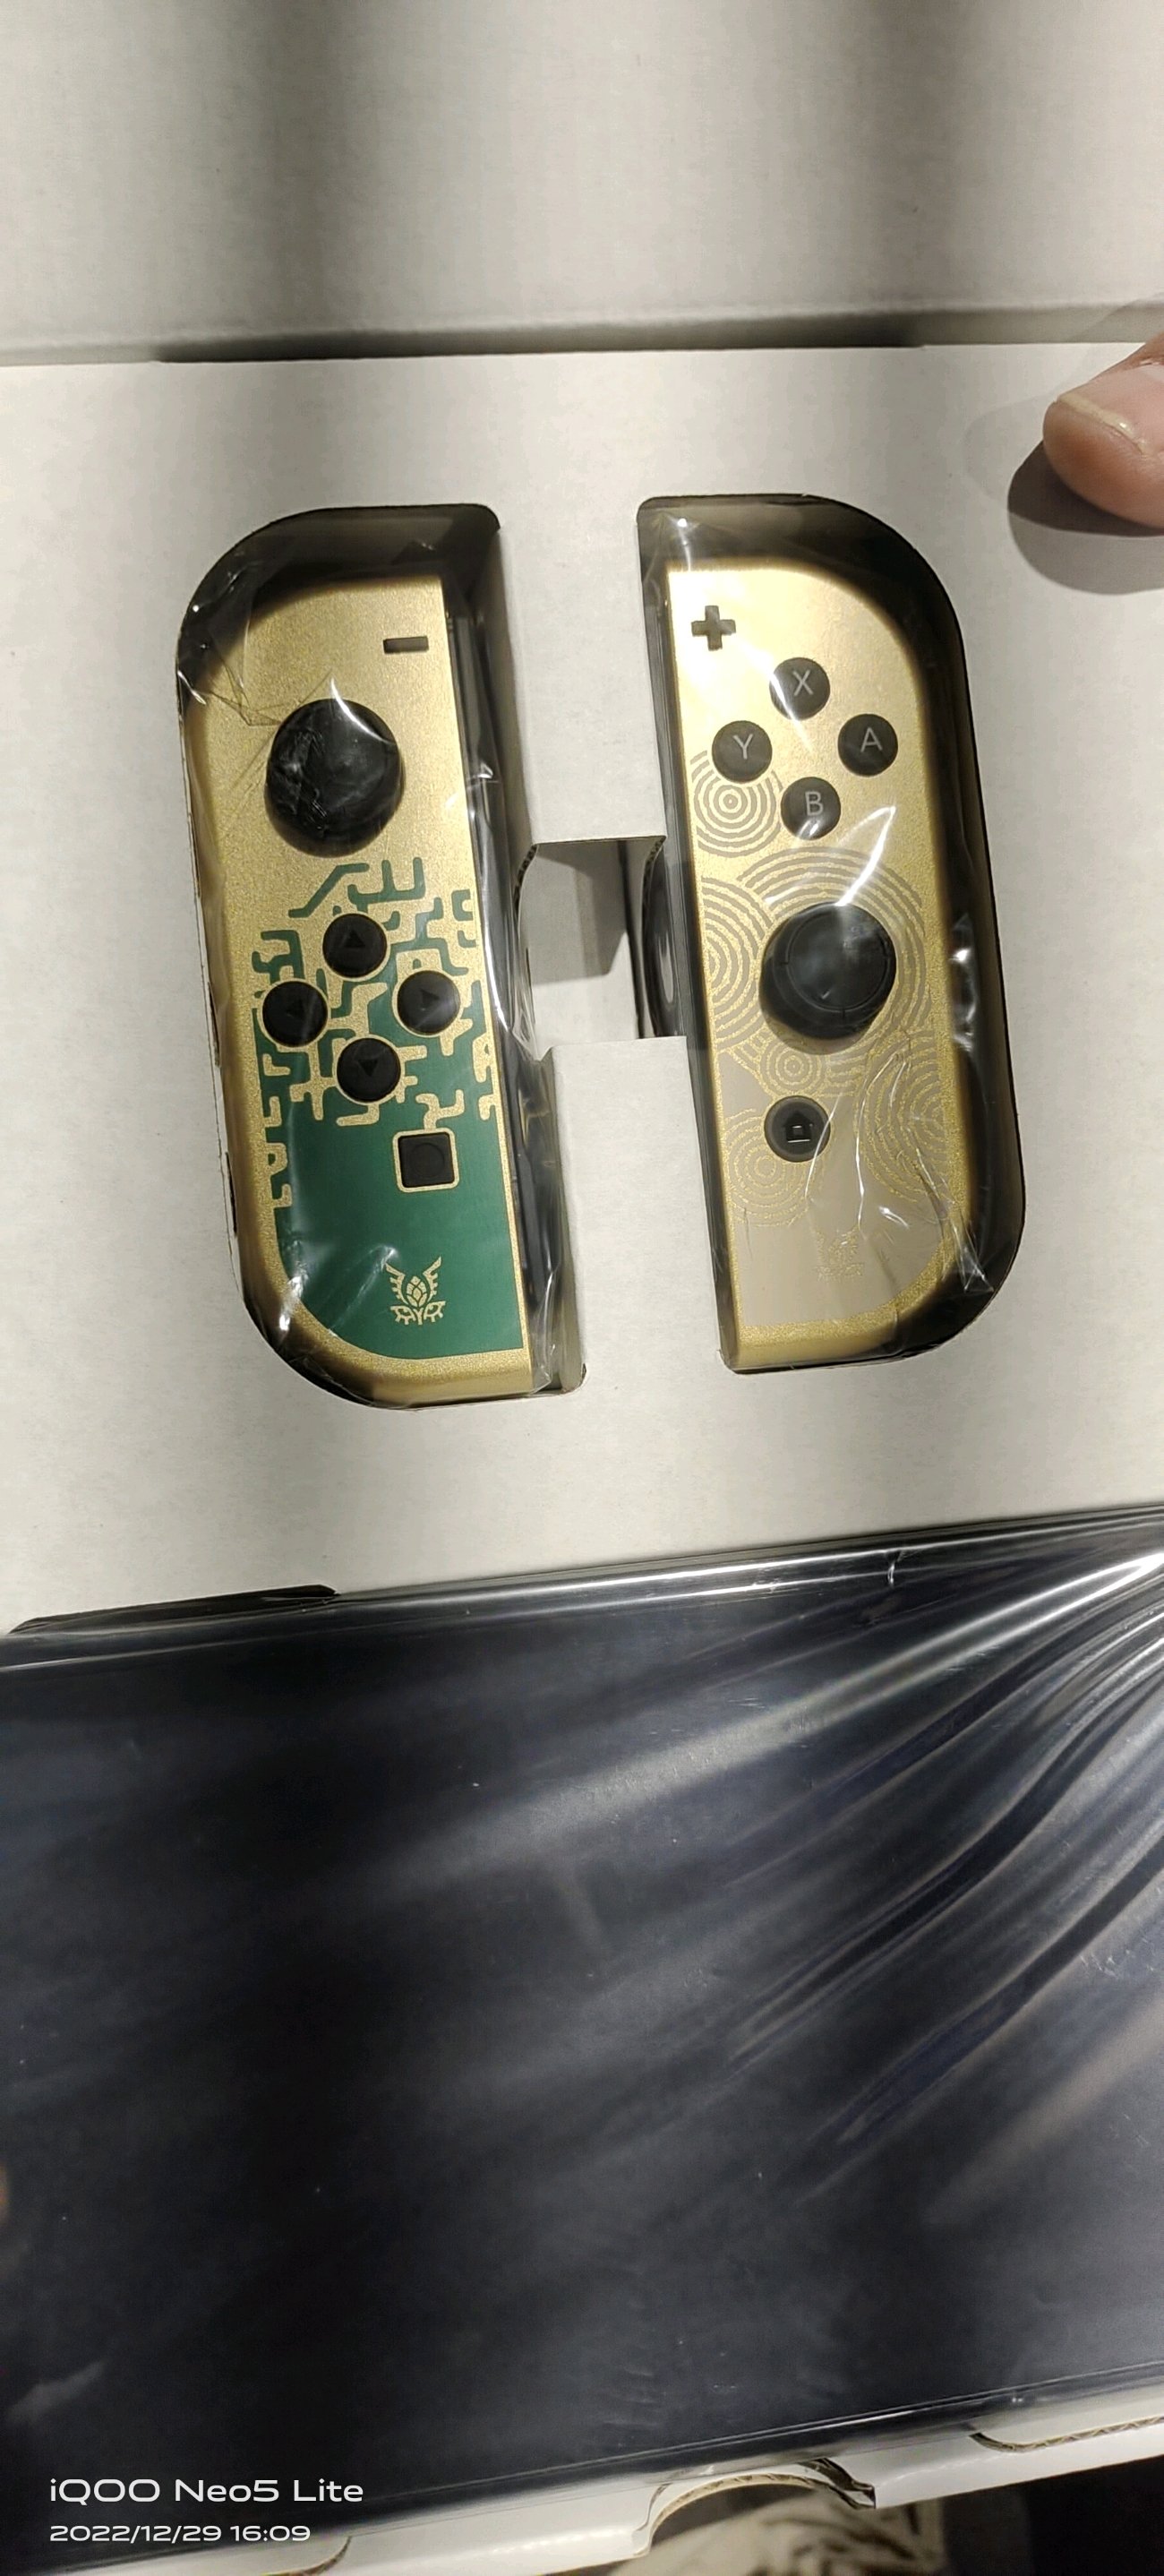 Console Nintendo Switch OLED The Legend Of Zelda: Tears Of The Kingdom  Special Edition [ Edição Especial ]